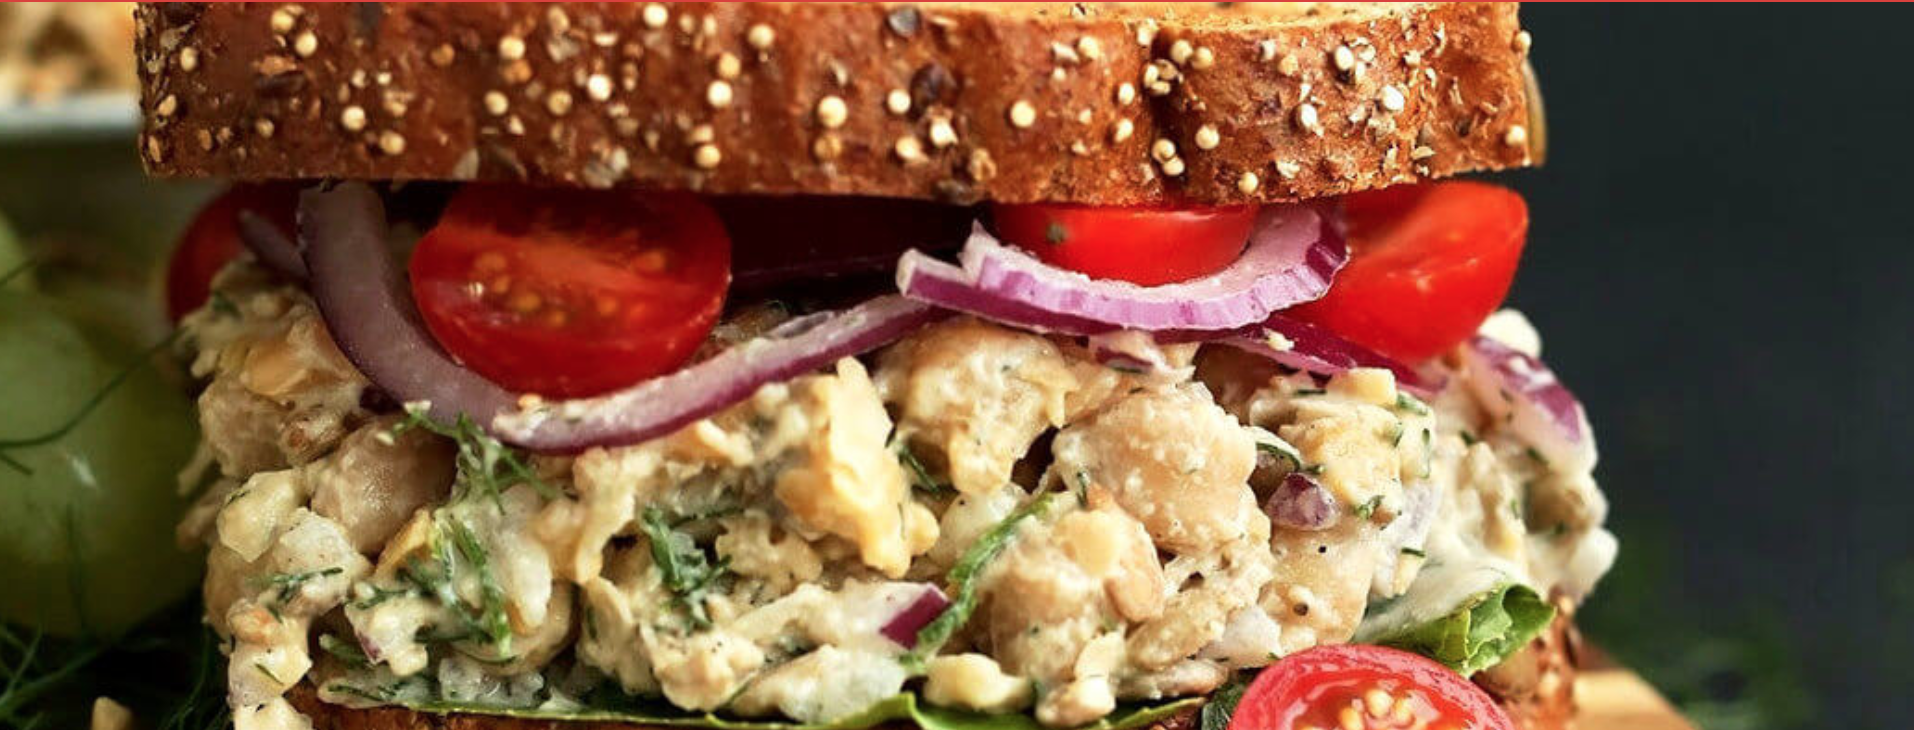 Un-Tuna Salad Sandwich